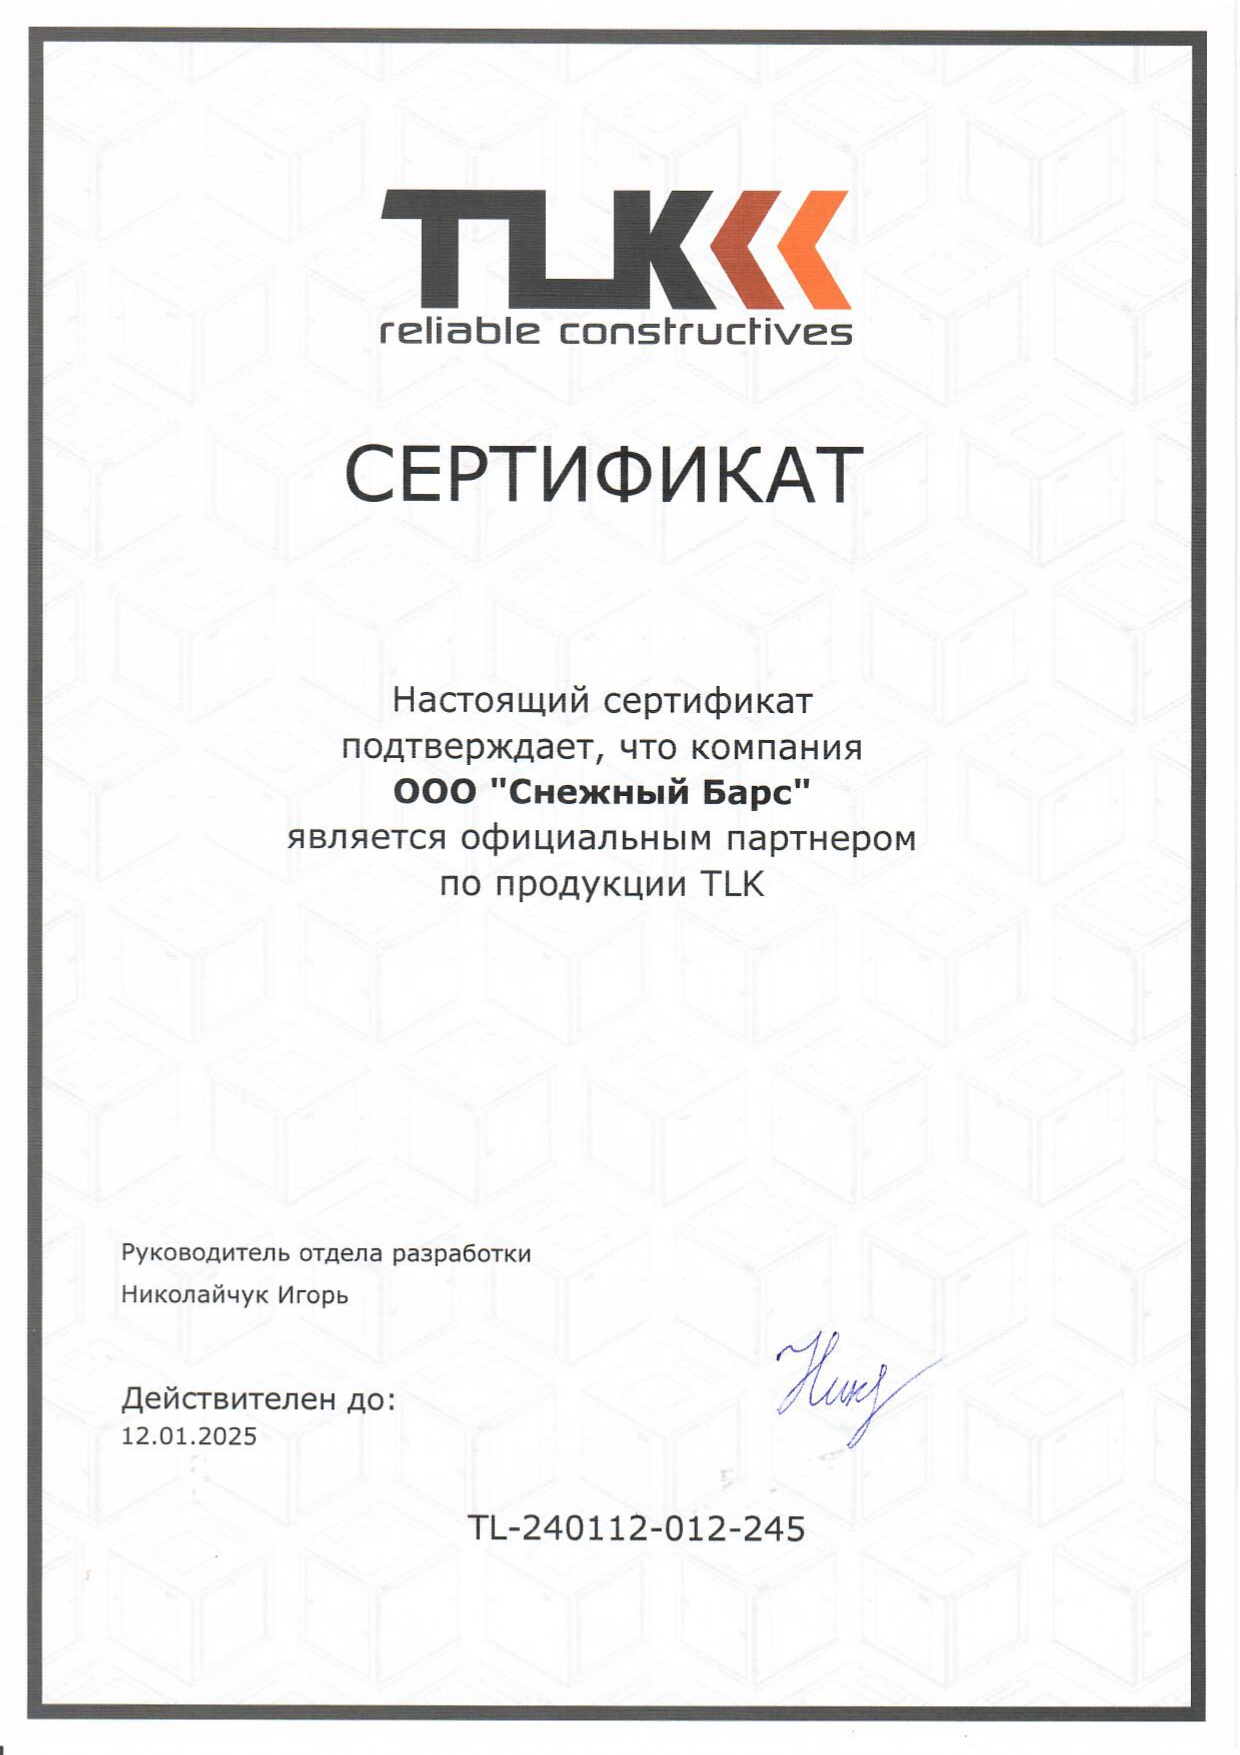 Сертификат официального партнера по продукции TLK